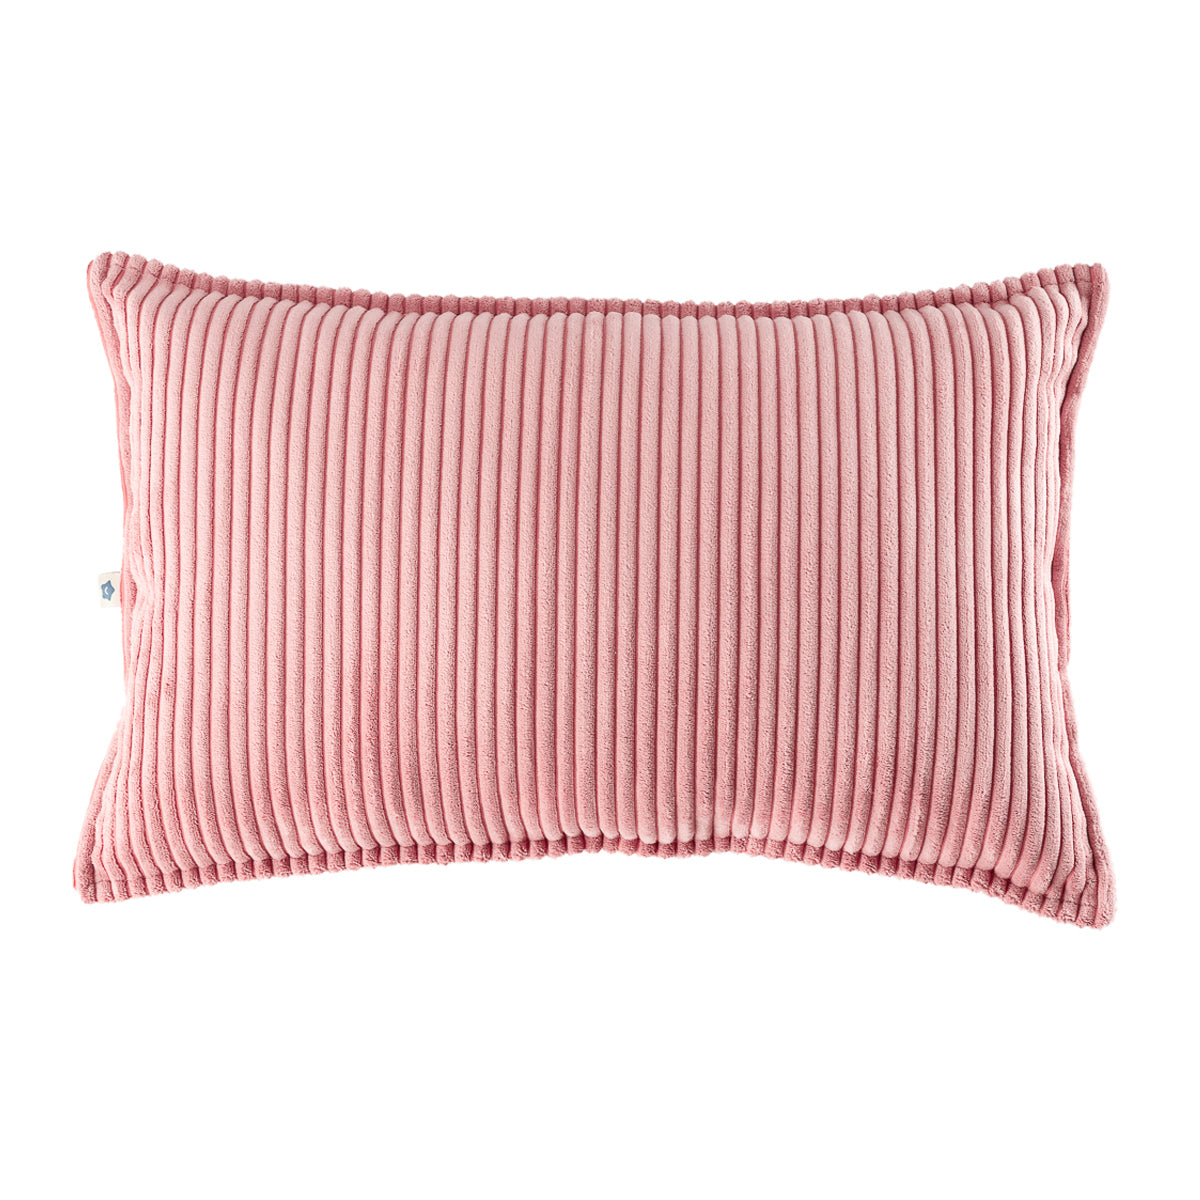 Het Wigiwama bolster kussen pink mousse is de perfecte toevoeging aan elke slaapkamer of misschien zelfs de woonkamer. Het kussen is heerlijk zacht en is gemaakt van een mooie corduroy rib stof. VanZus.